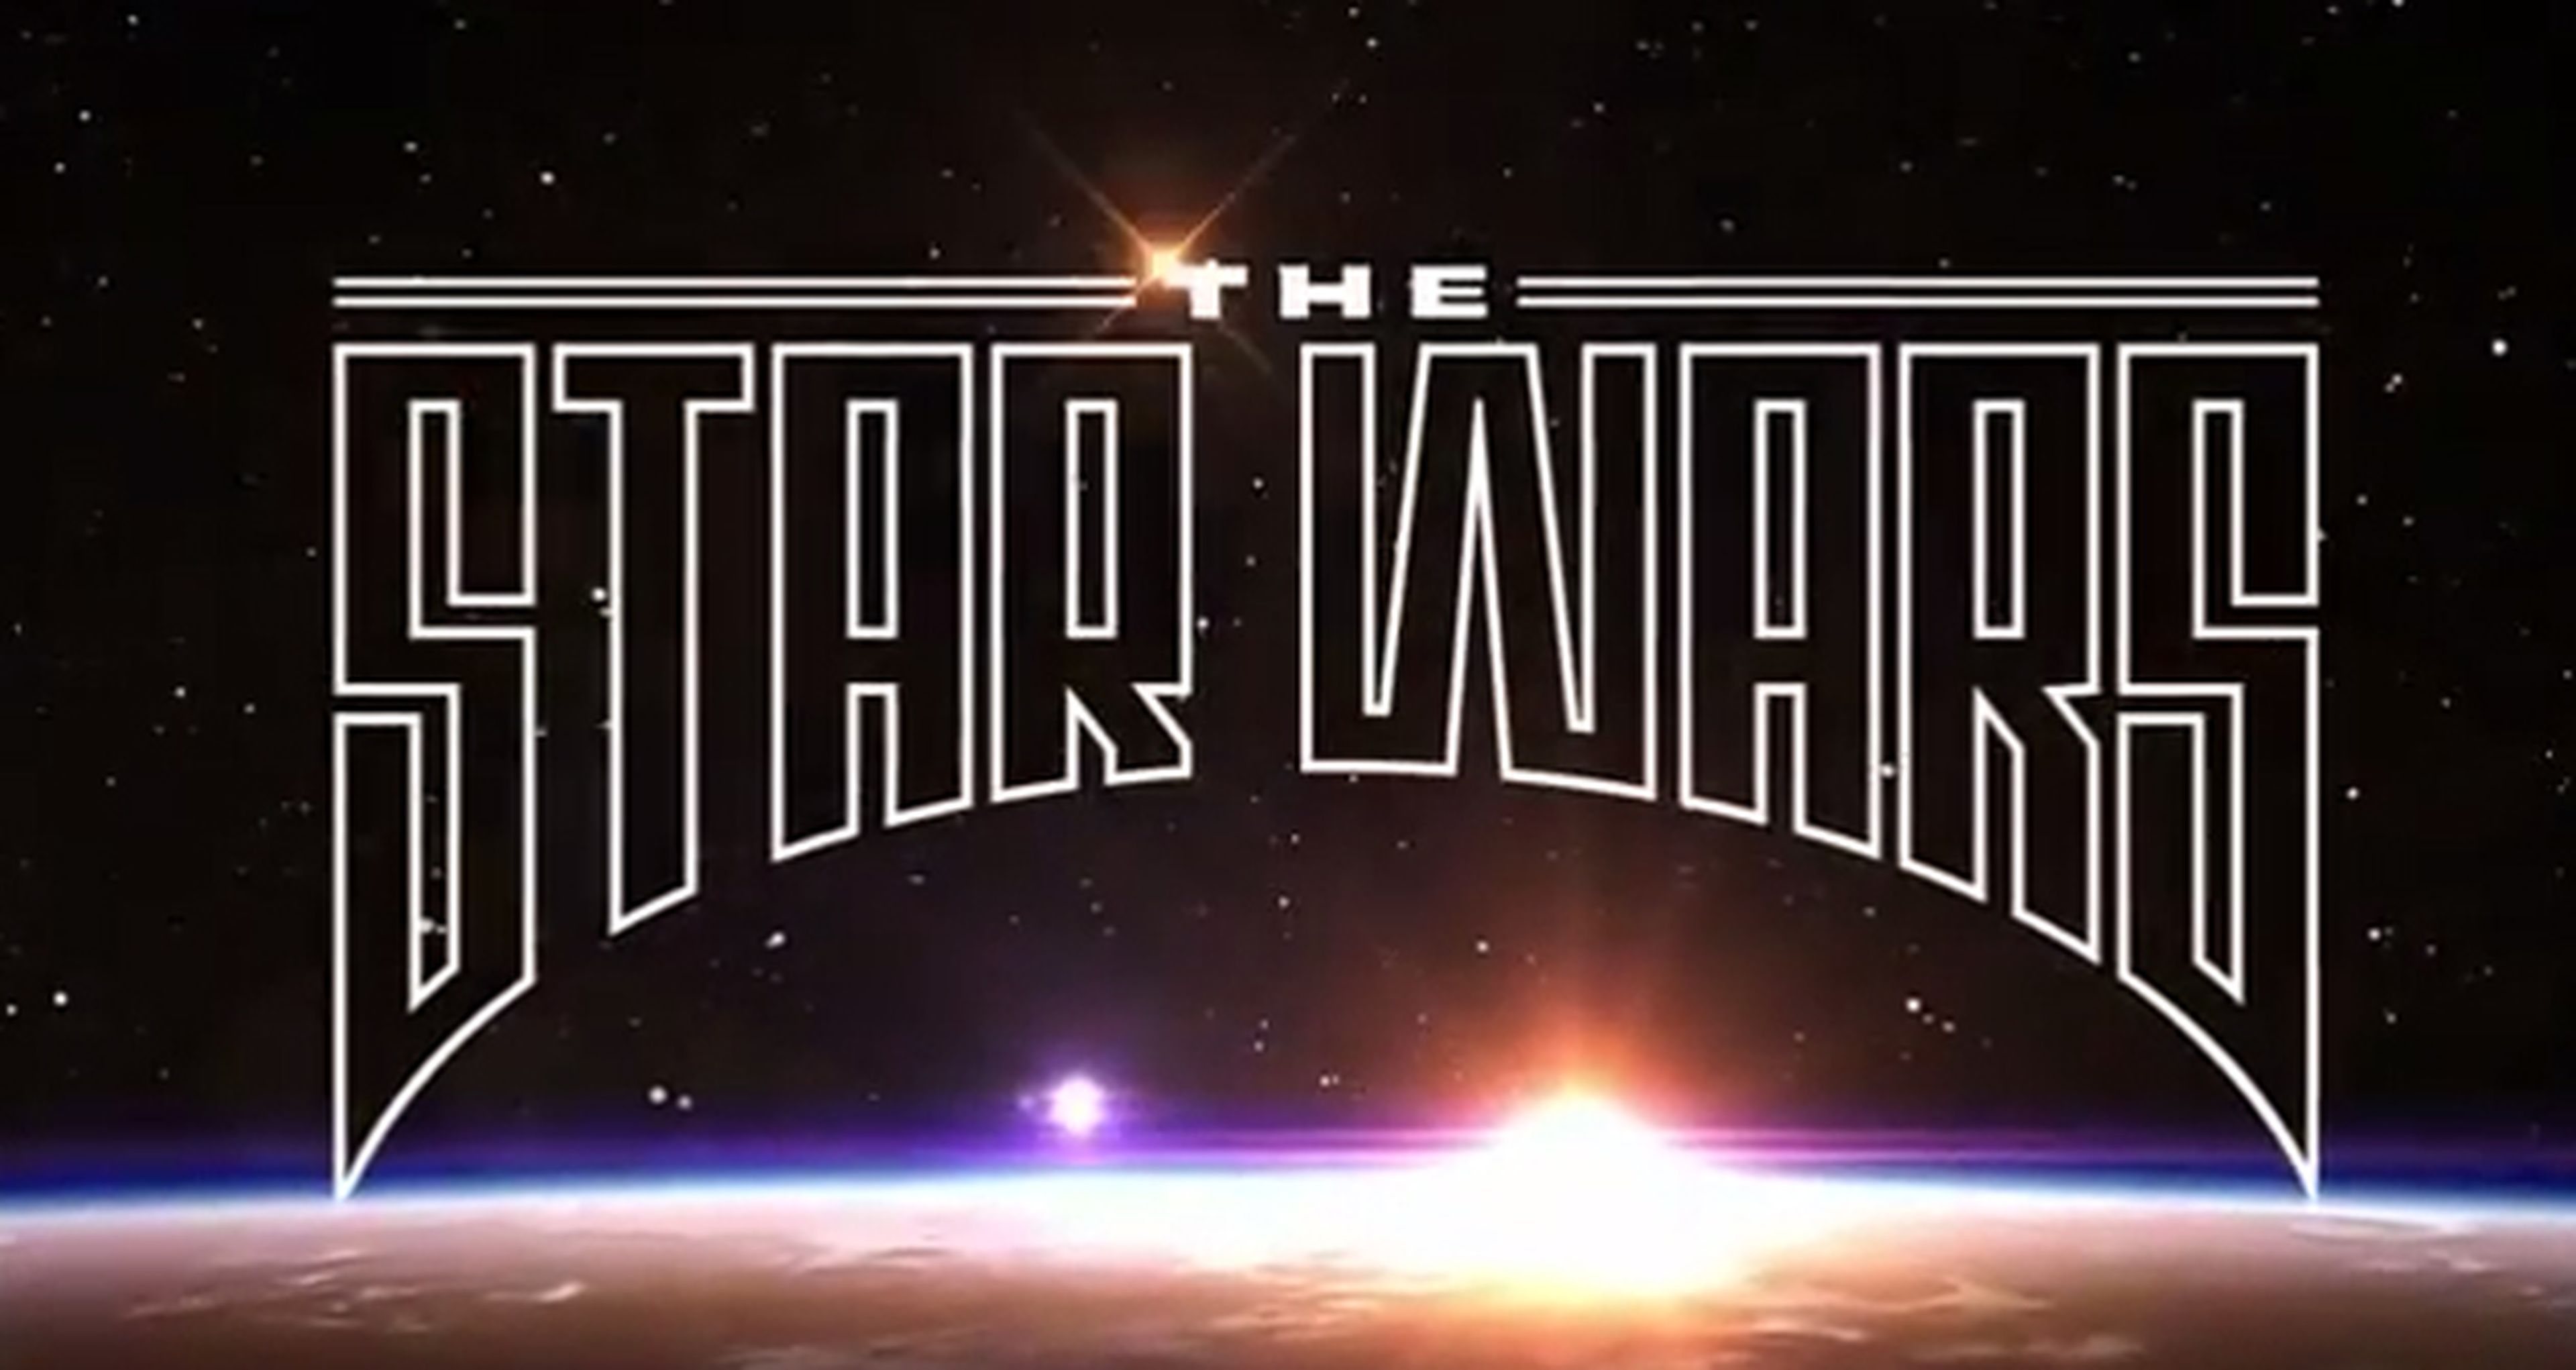 Trailer del nuevo cómic The Star Wars, de Dark Horse